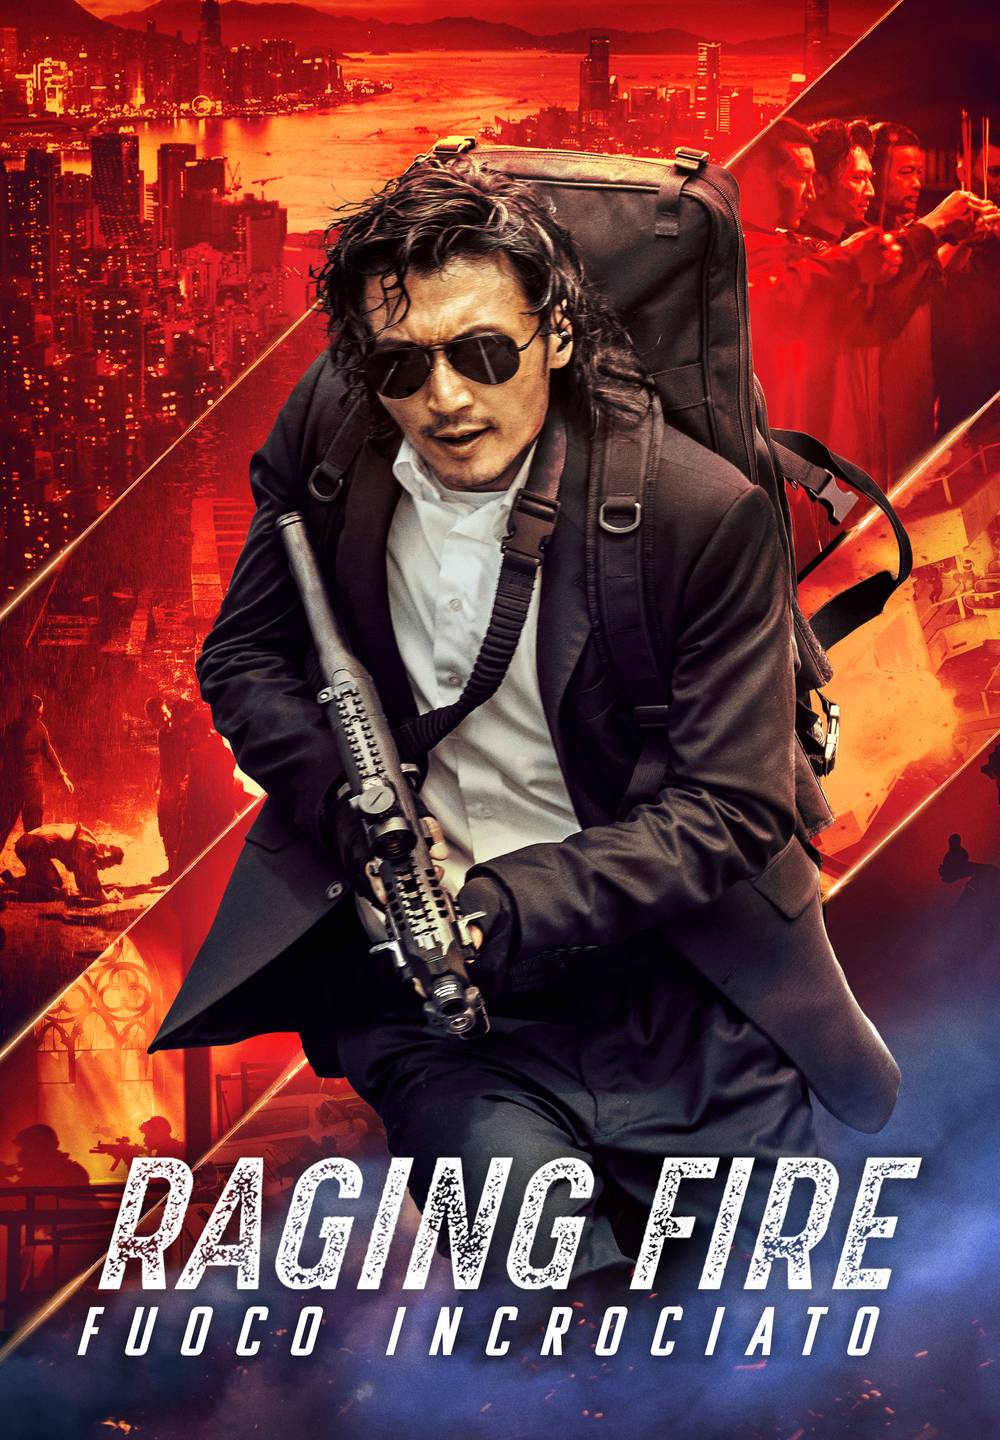 Raging Fire – Fuoco incrociato [HD] (2021)